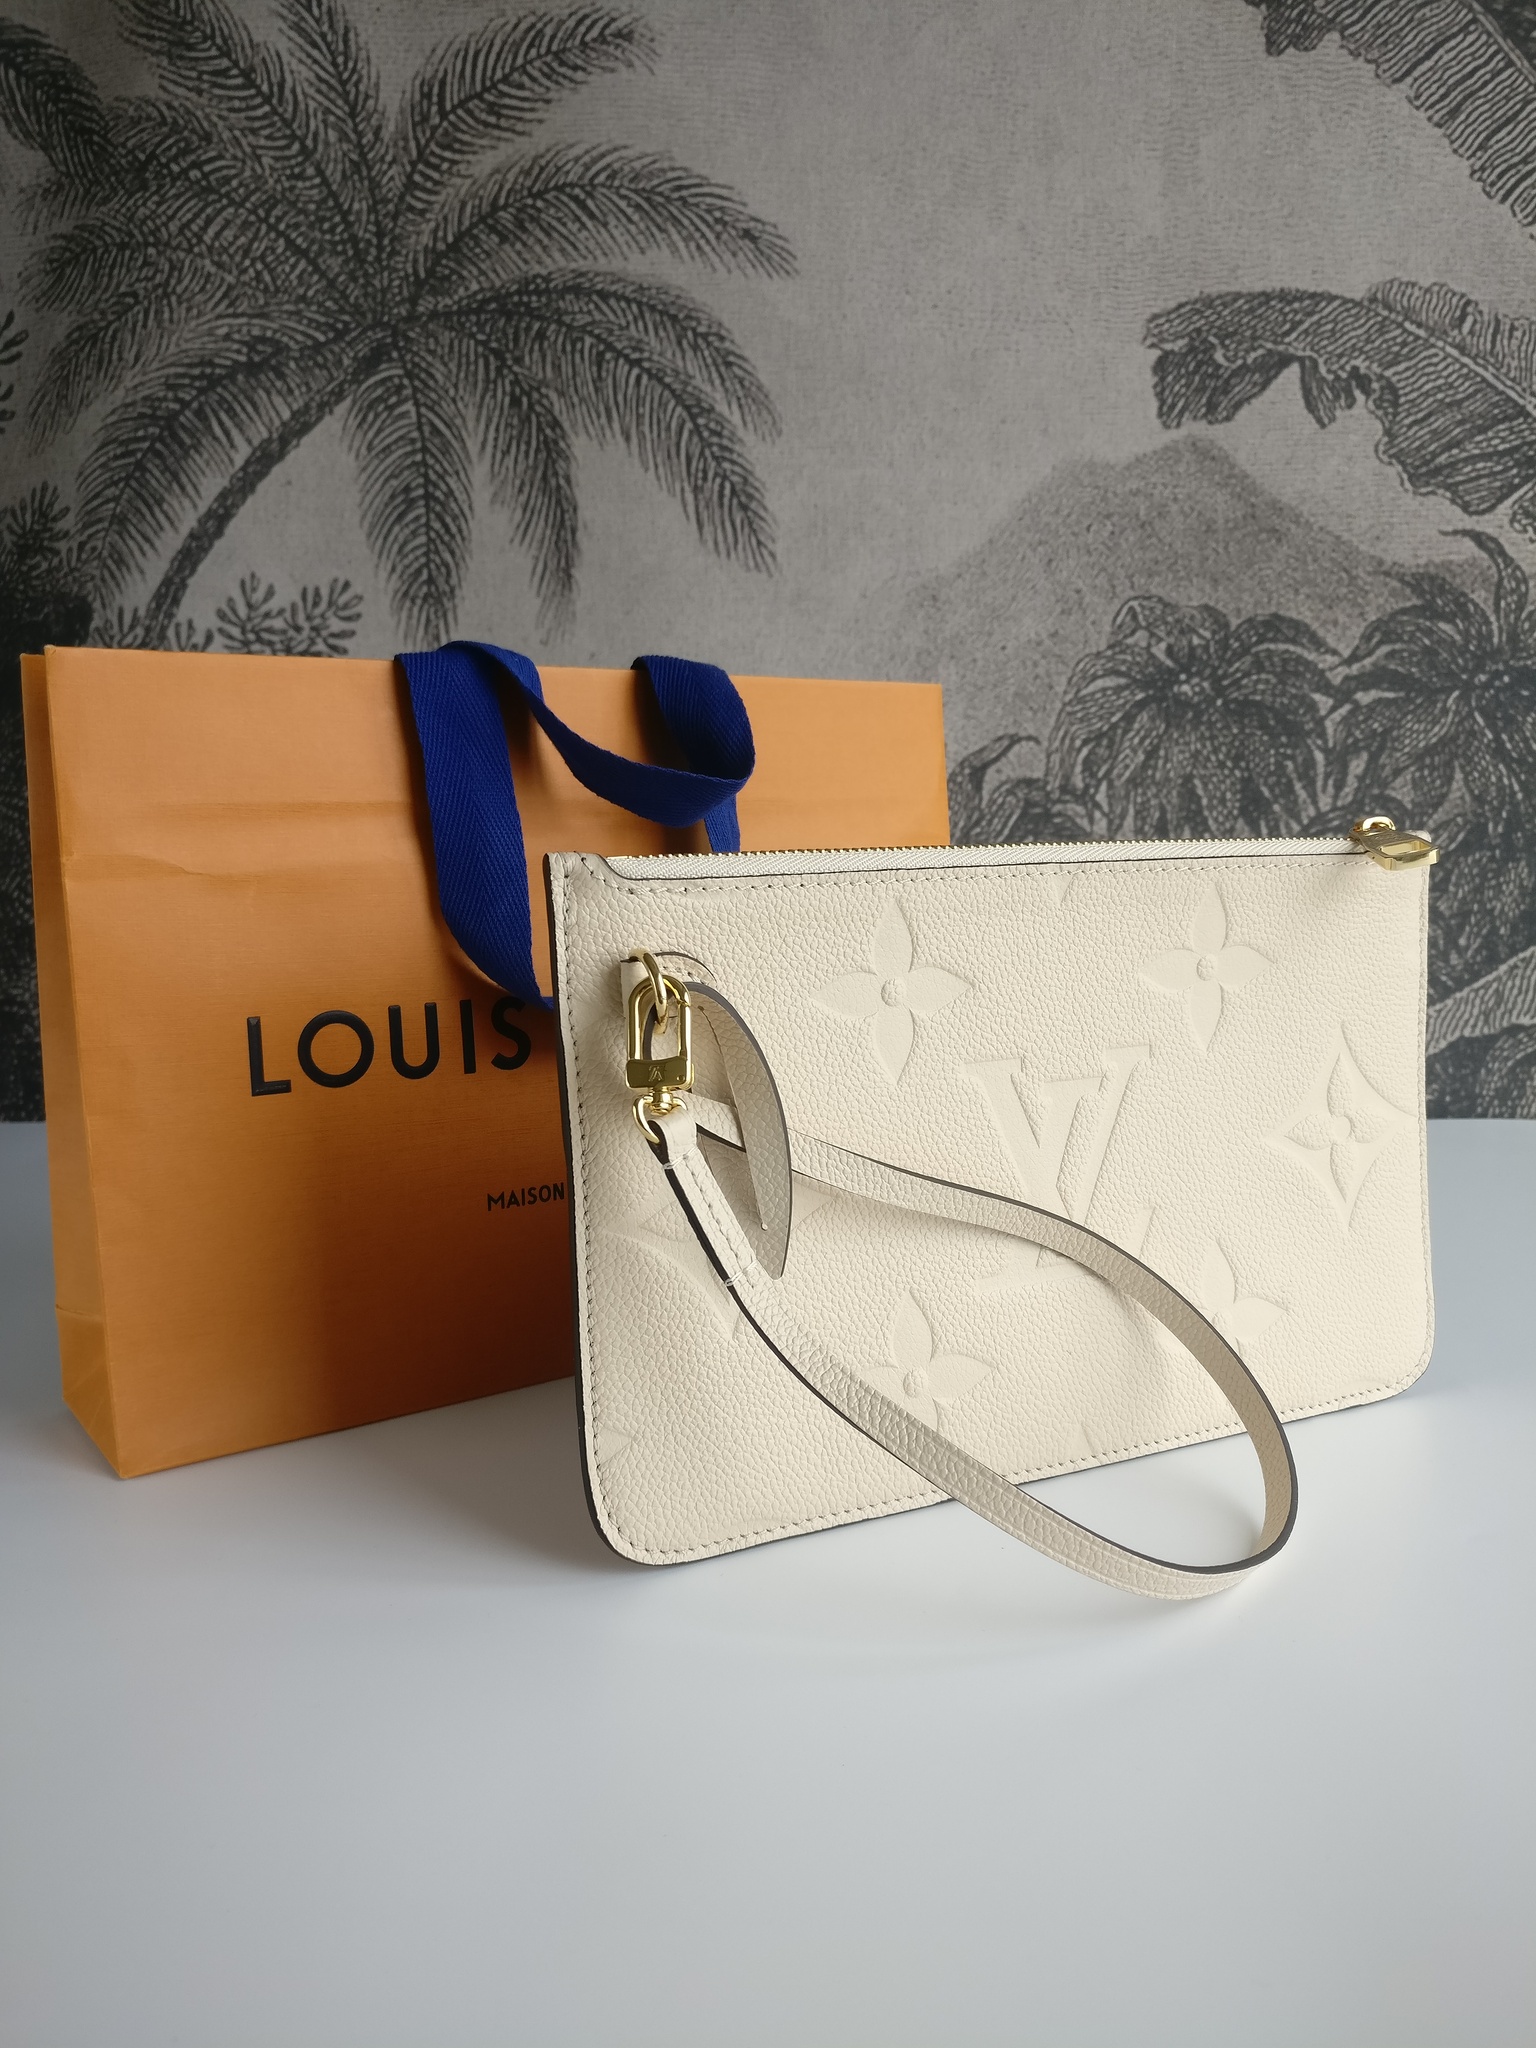 Louis Vuitton Neverfull empreinte clutch